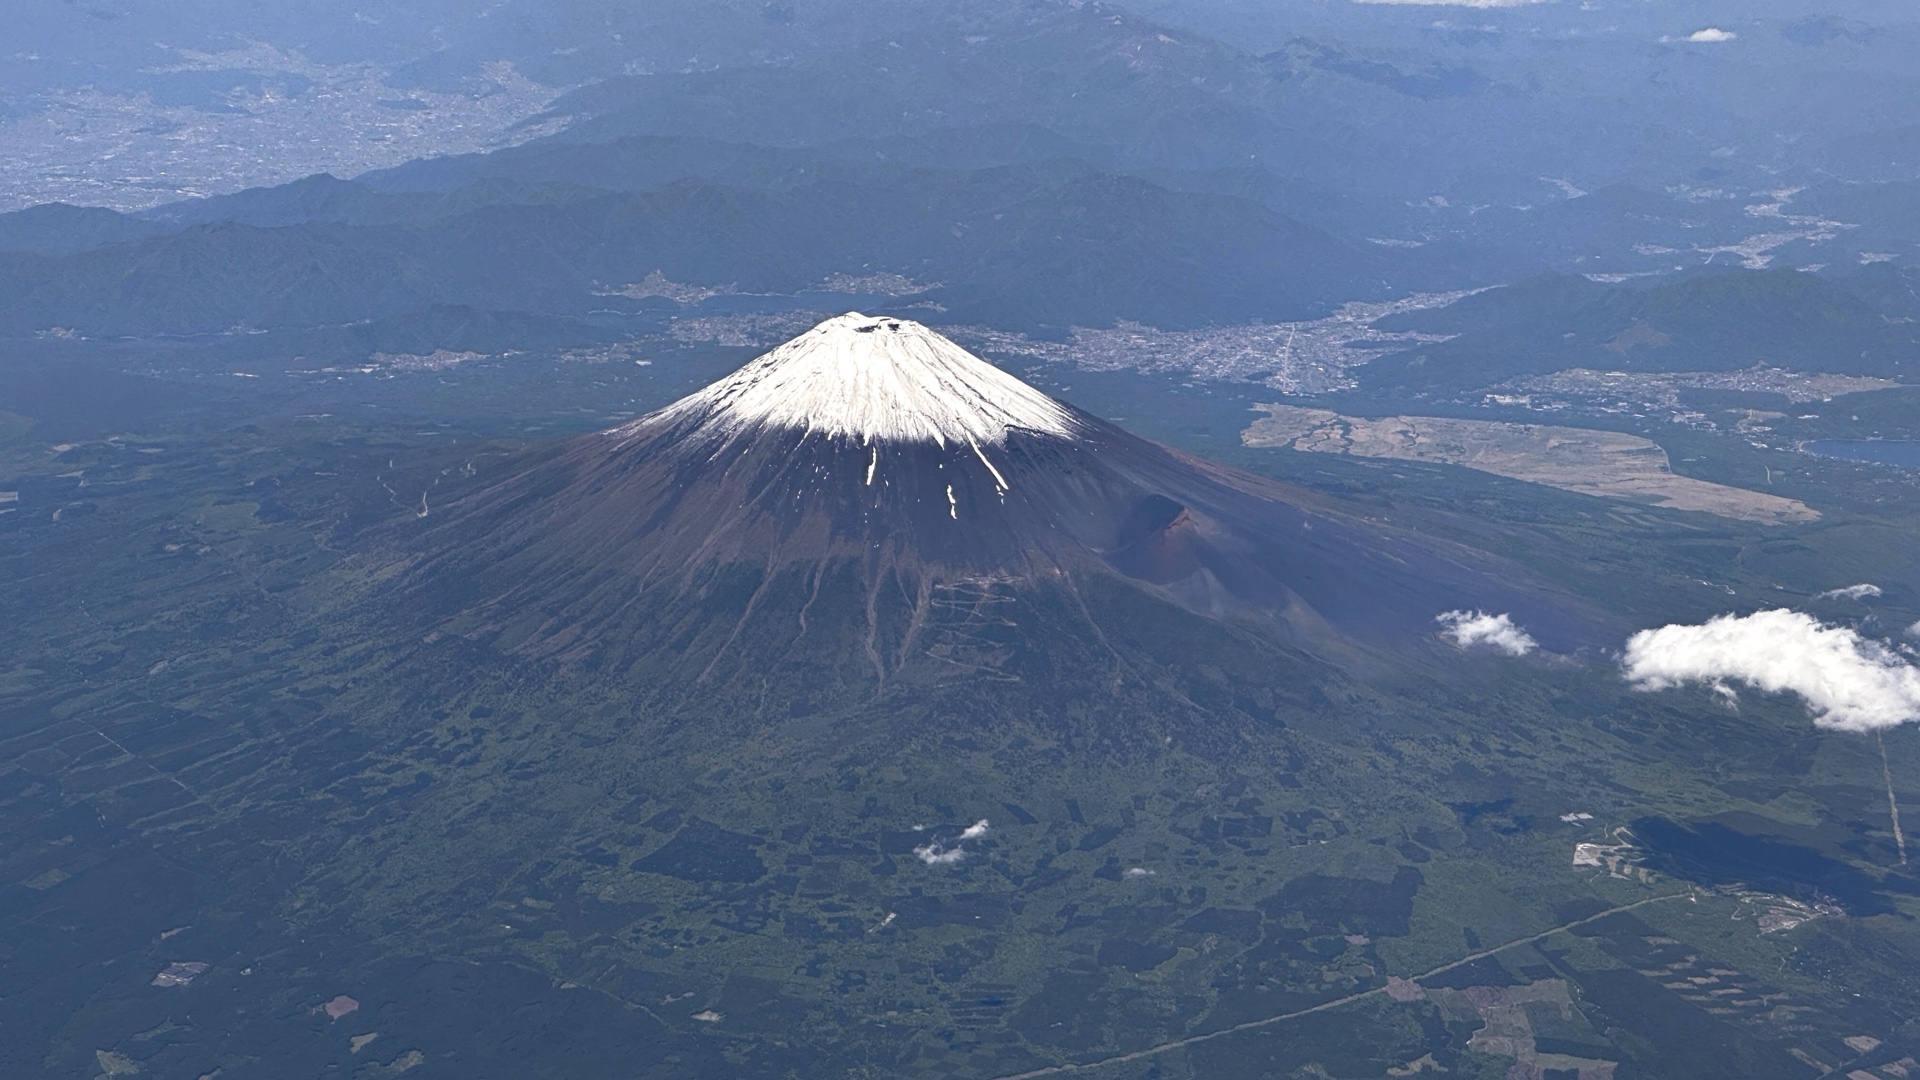 Hinter dem Fuji ist der Ort Fujikawaguchiko zu sehen.